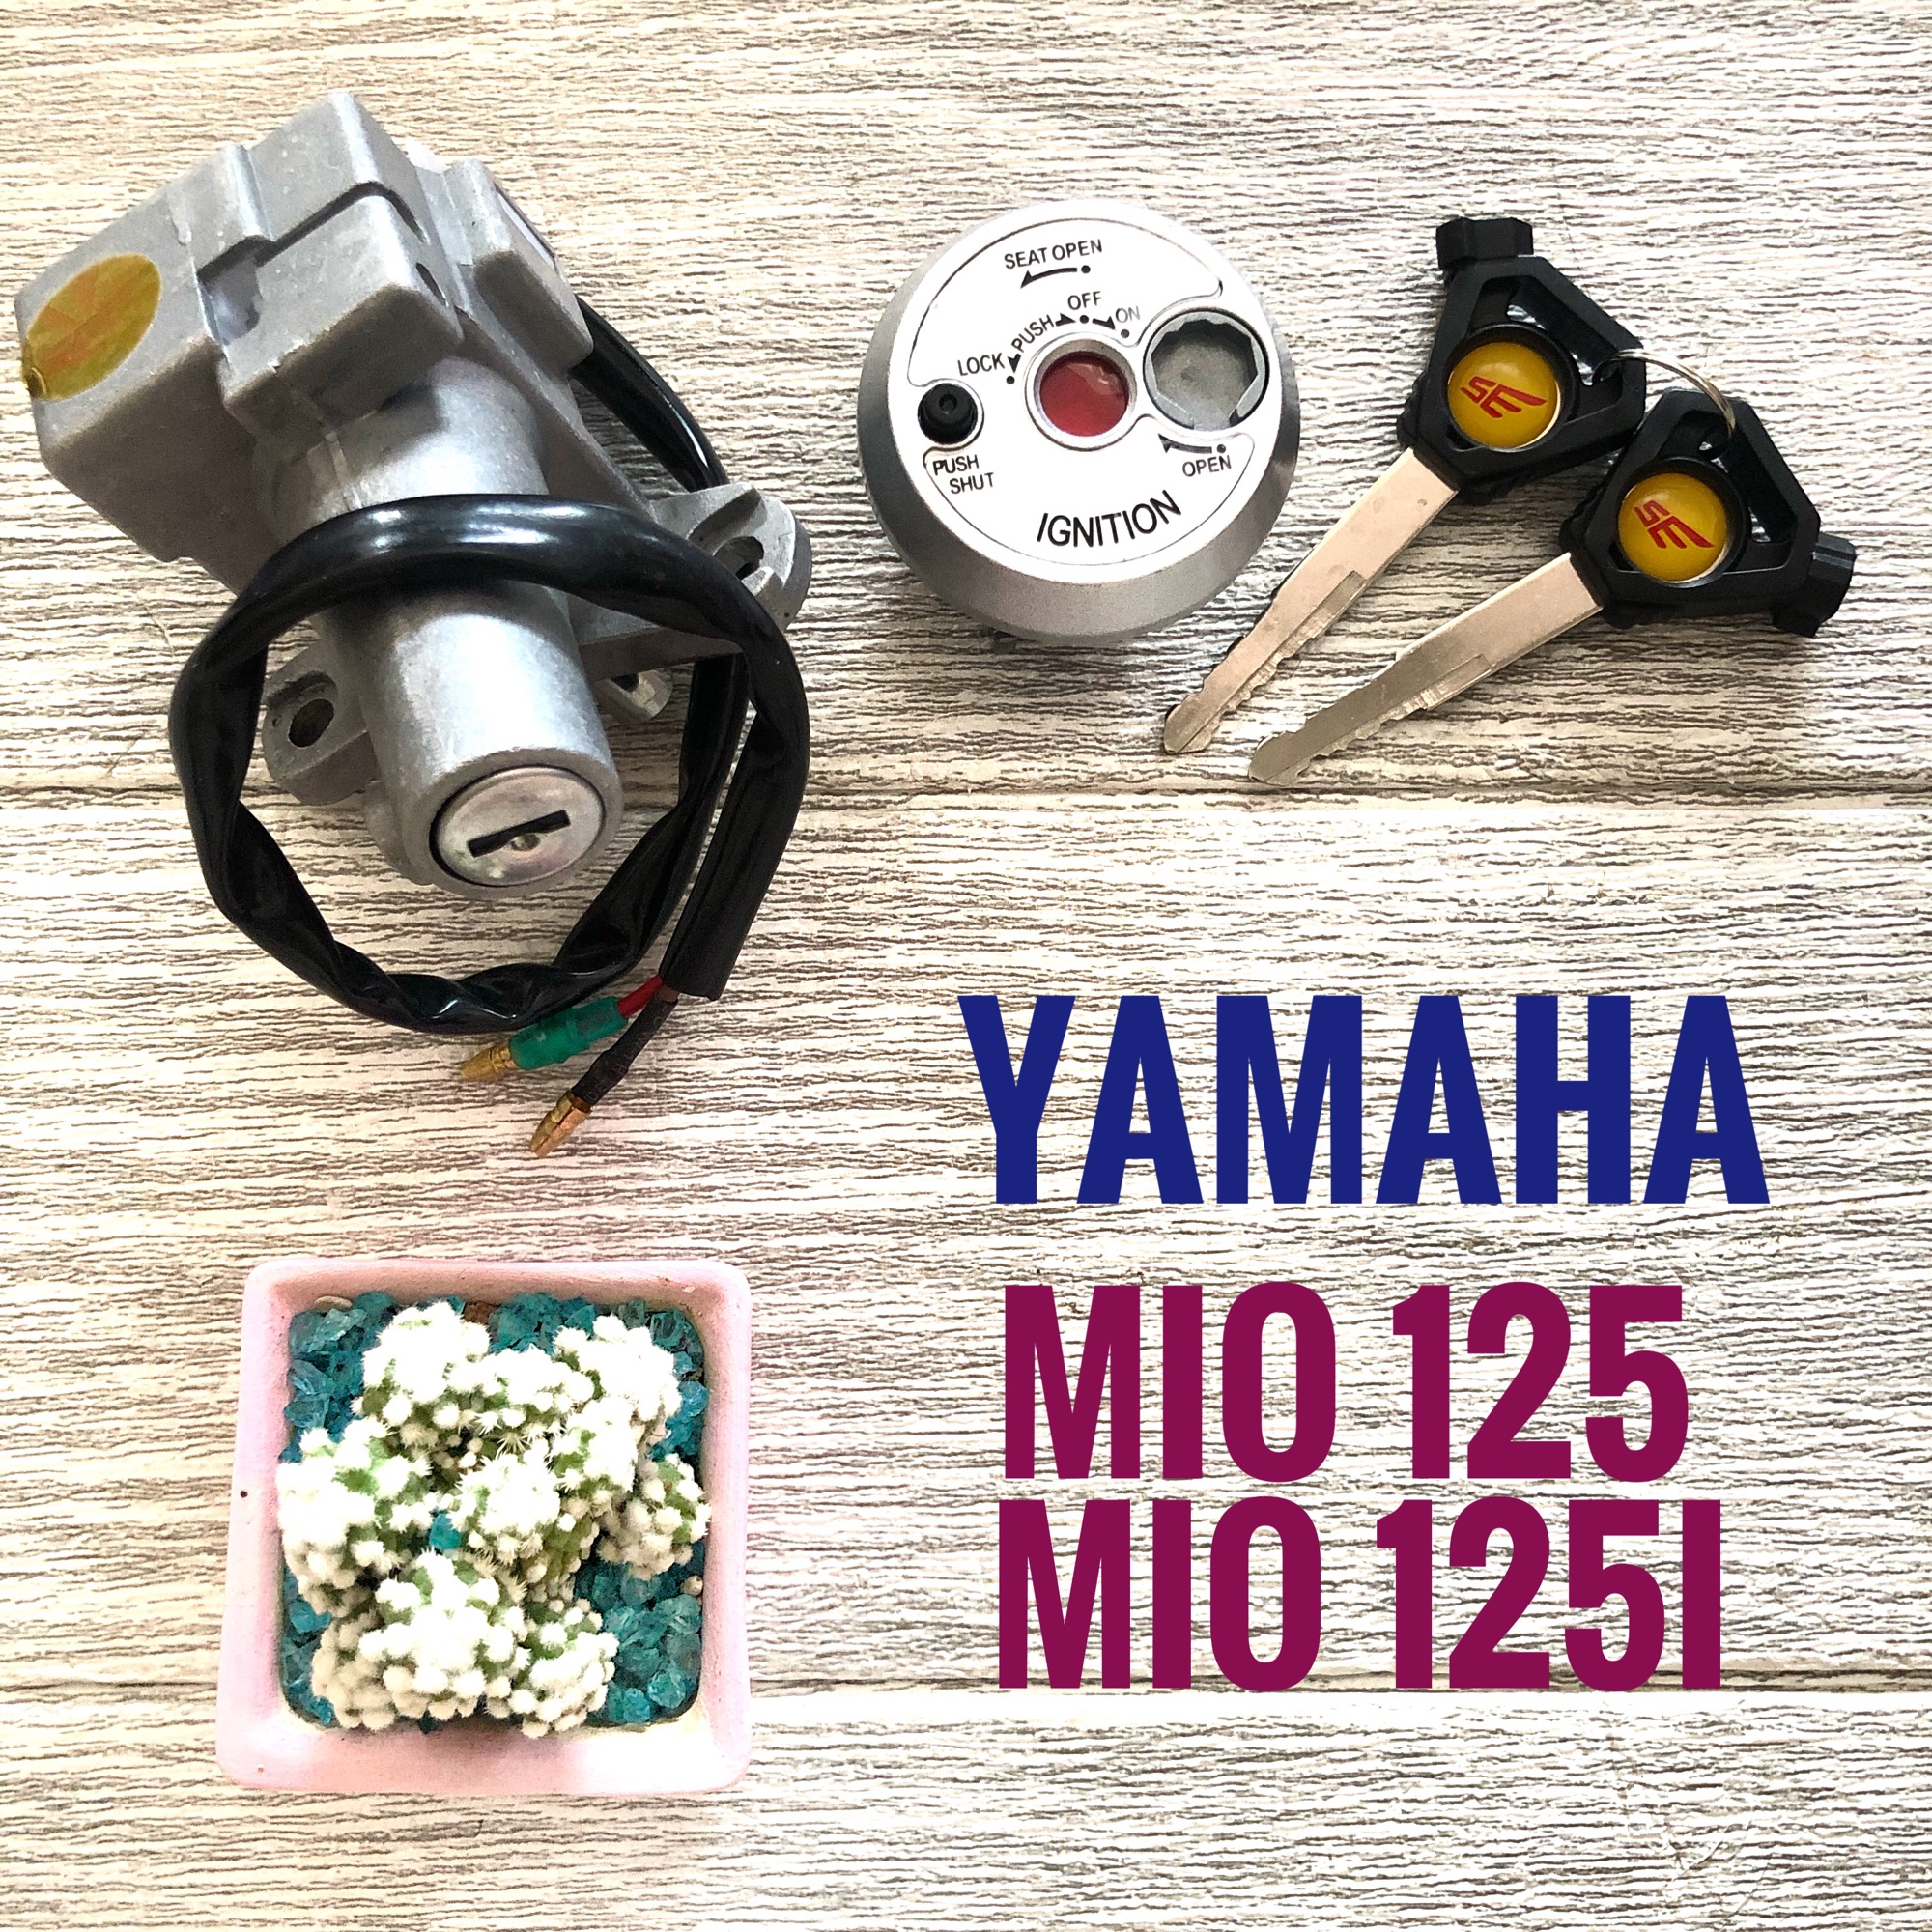 สวิตซ์กุญแจ YAMAHA MIO125 , MIO125i , ยามาฮ่า มิโอ125 , มิโอ125ไอ (33S-XH250-10) เกรดเทียบศูนย์ สวิทซ์ กุญแจ มอเตอร์ไซค์